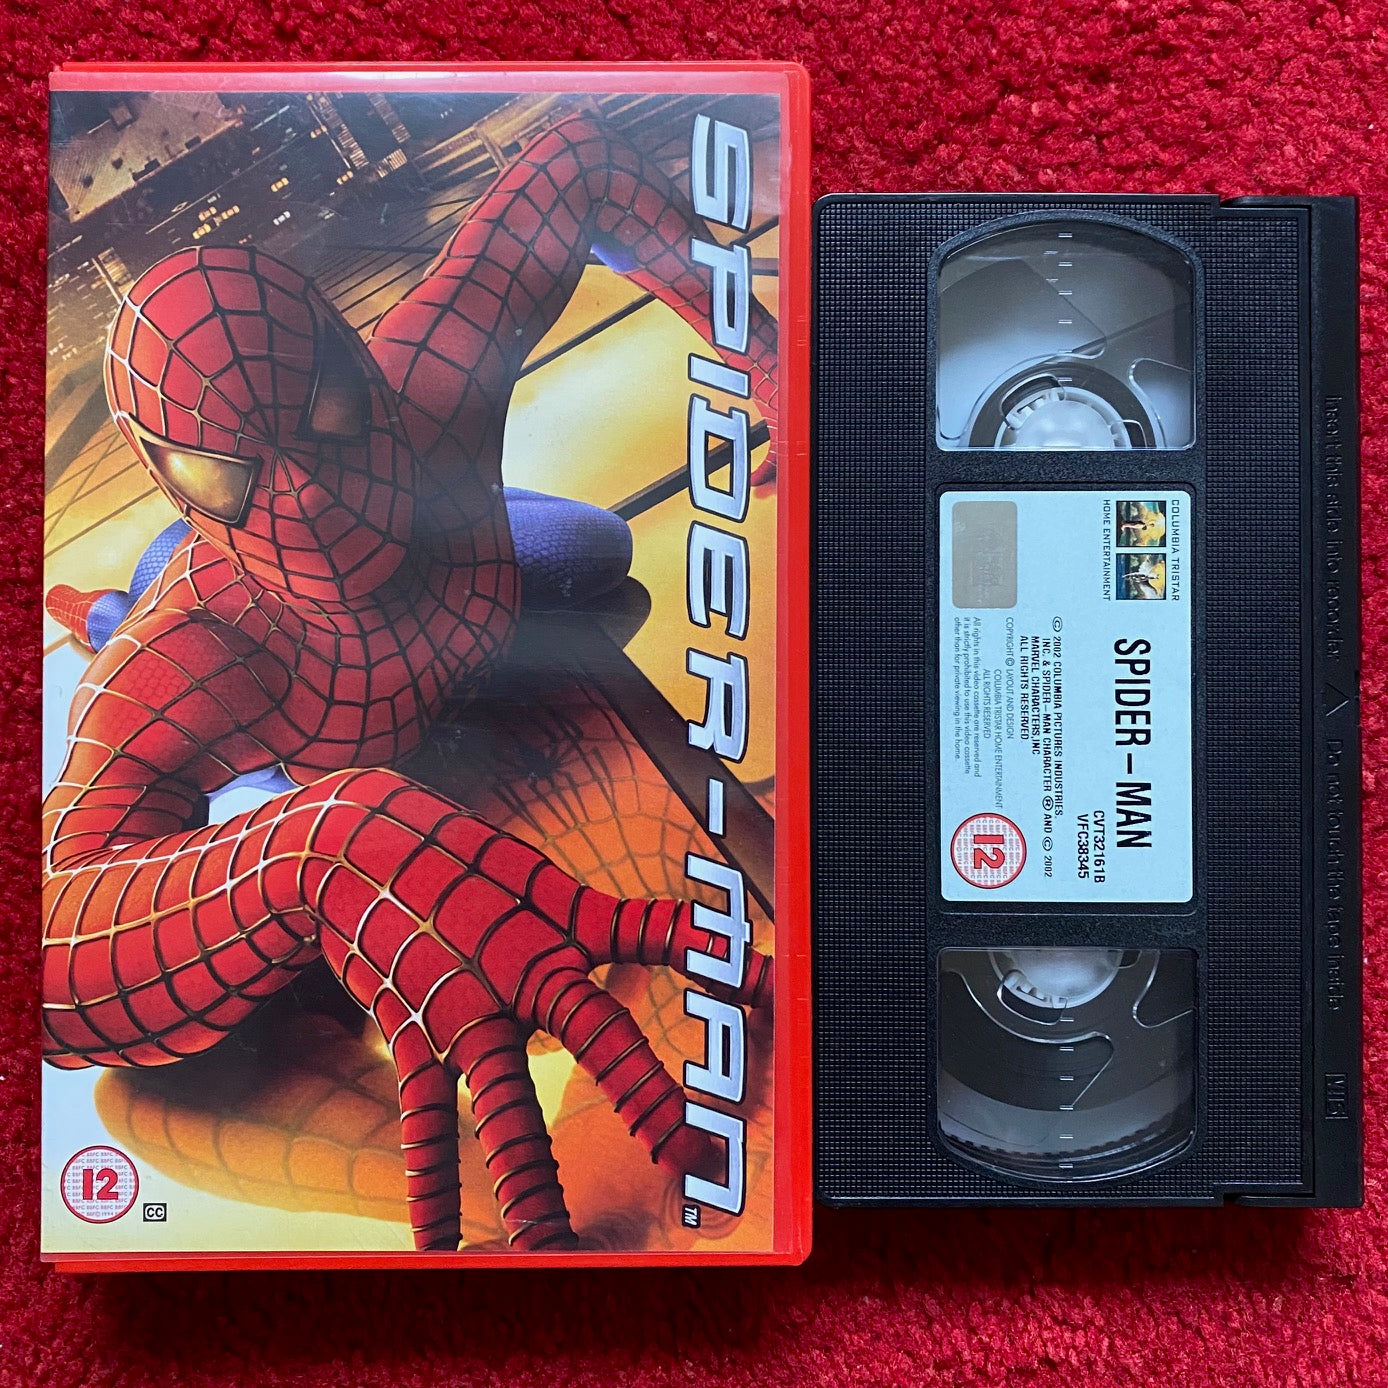 Spider-Man (VHS, 2002) for sale online